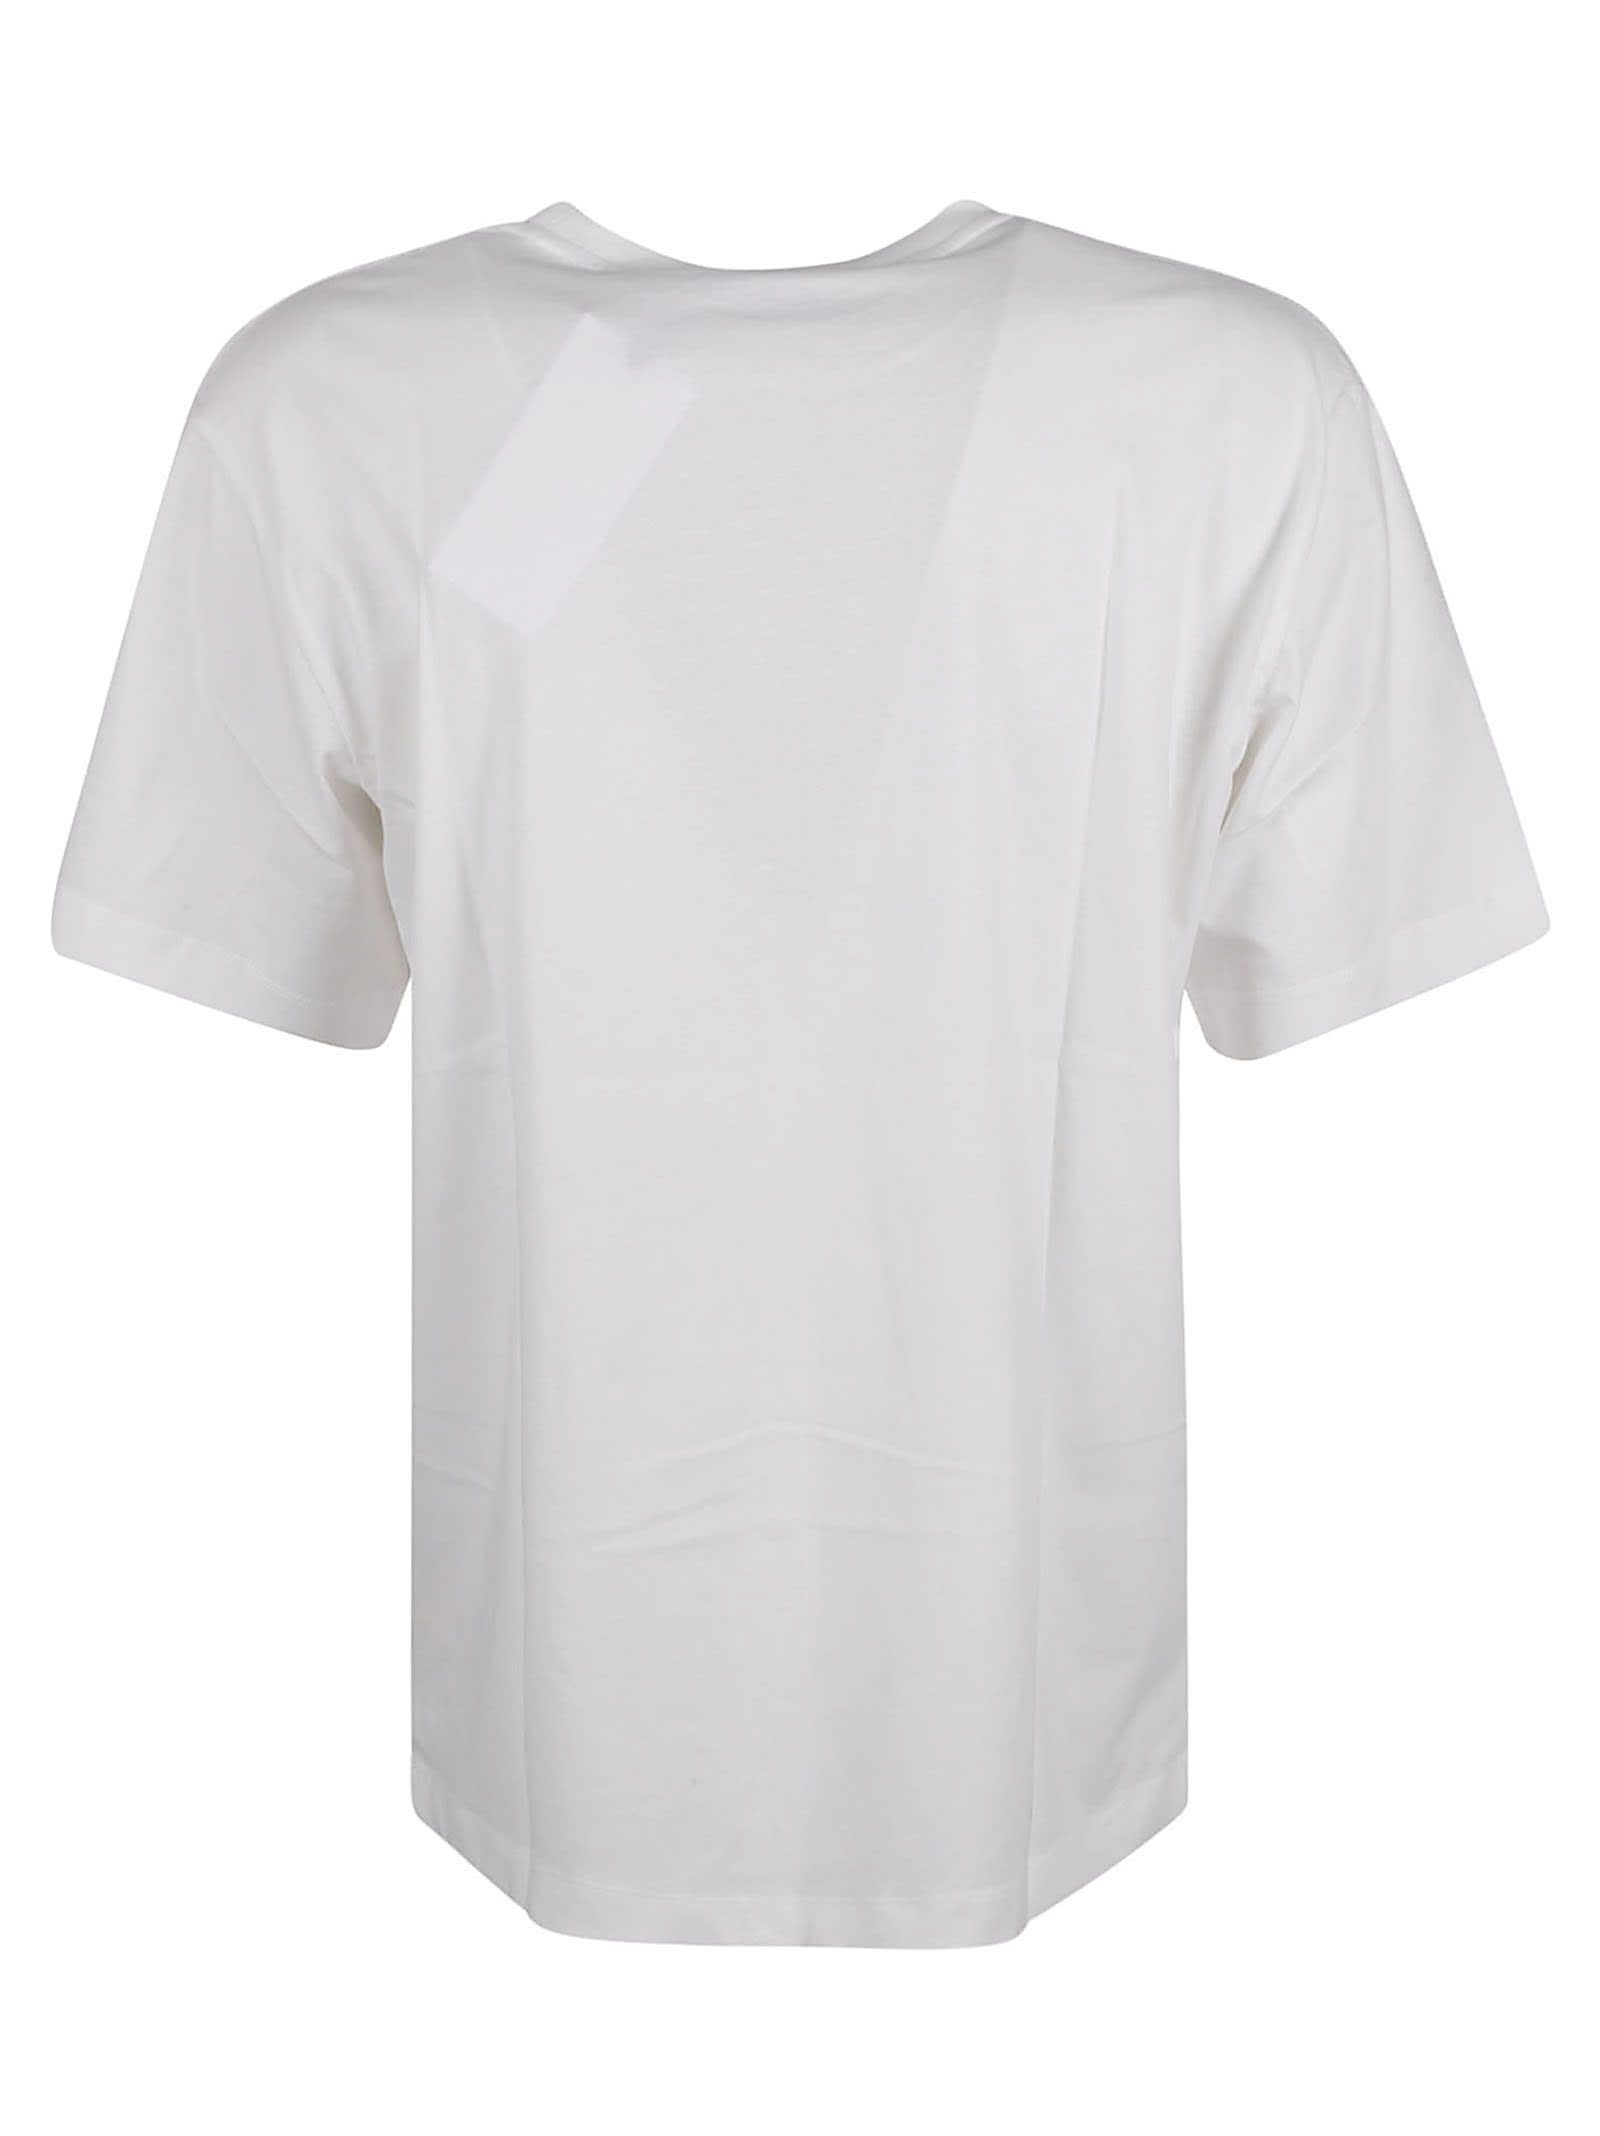 Shop Etudes Studio Round Star T-shirt In White